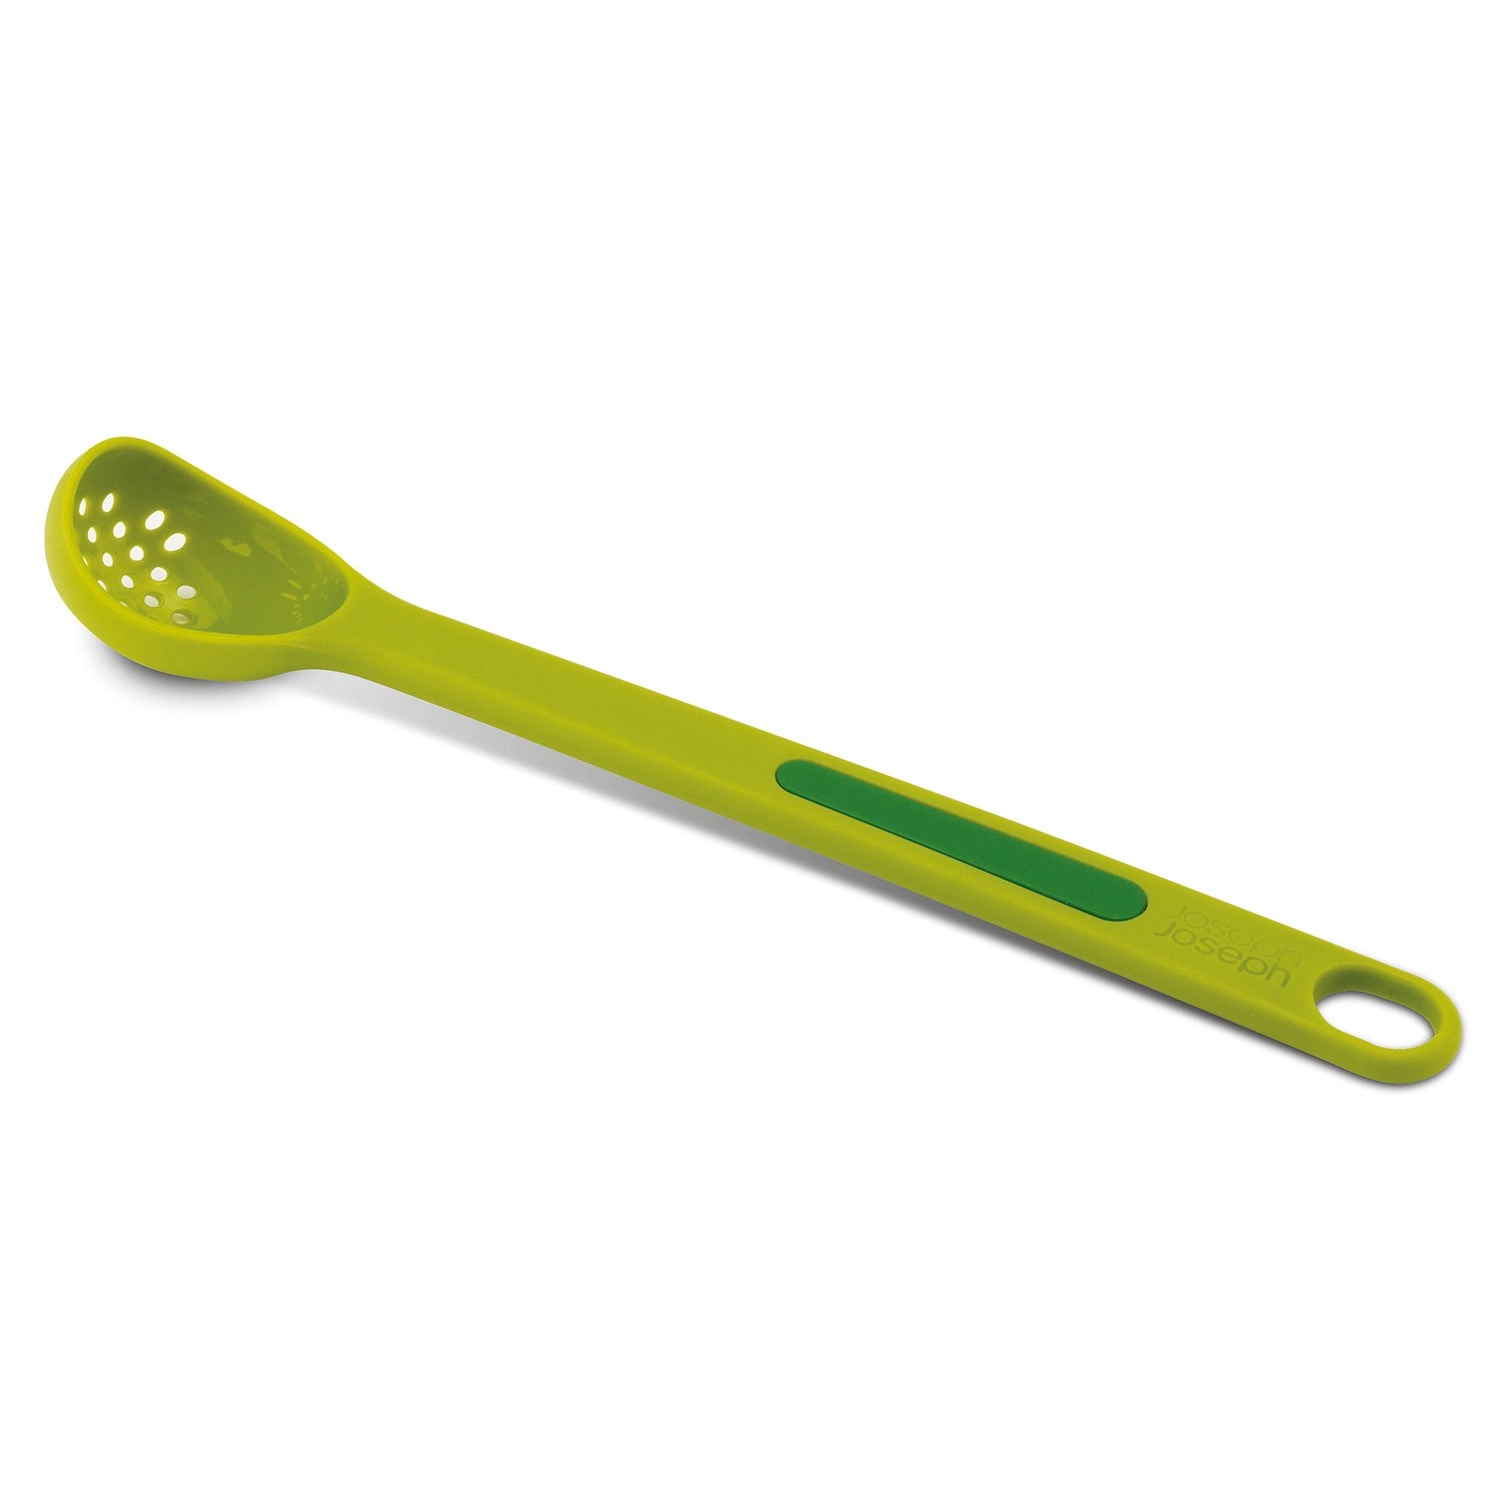 Scoop pick cuillère fourchette set de 2, vert